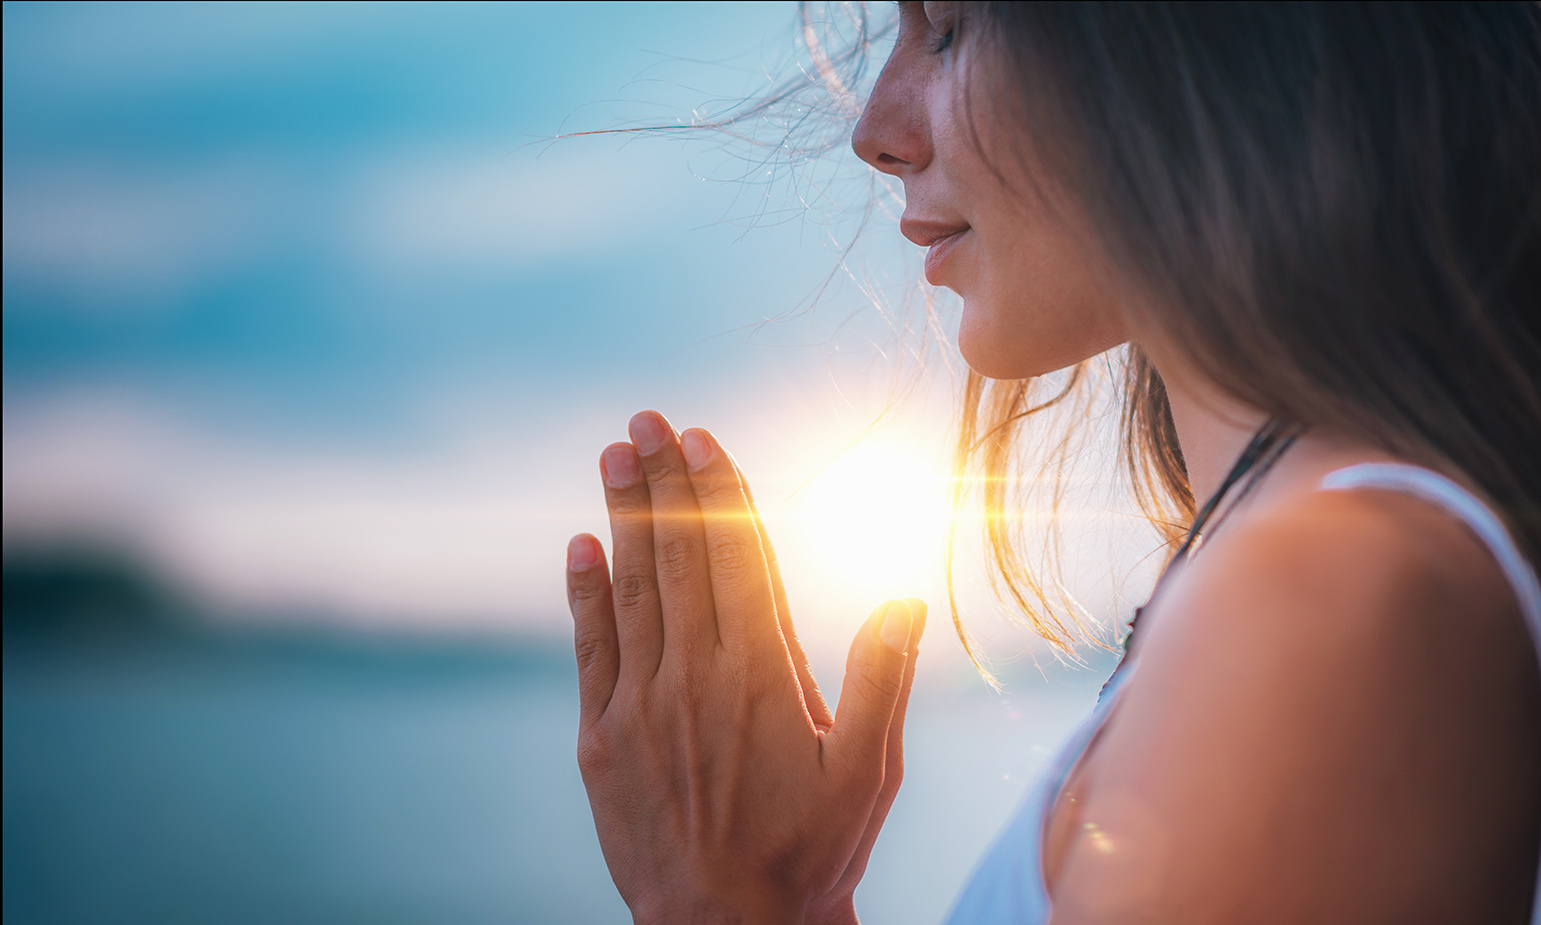 3 Ways to Meditate to Relieve Stress - wikiHow